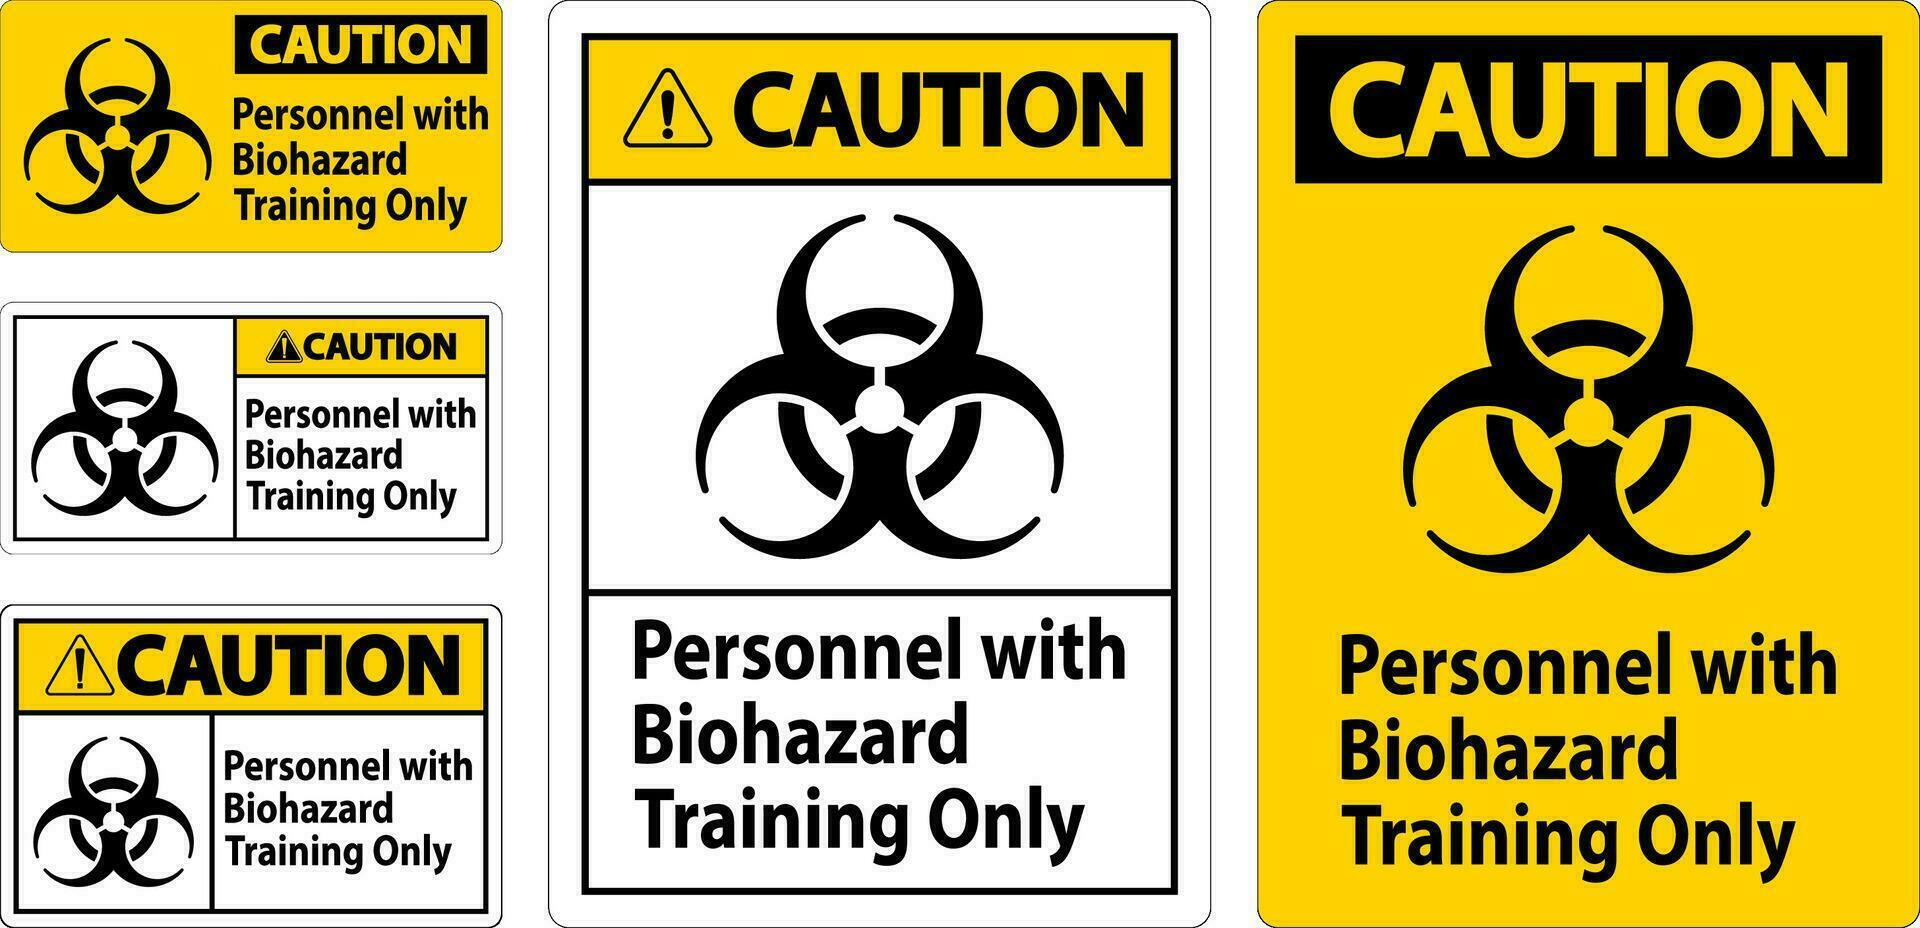 voorzichtigheid etiket personeel met biohazard opleiding enkel en alleen vector